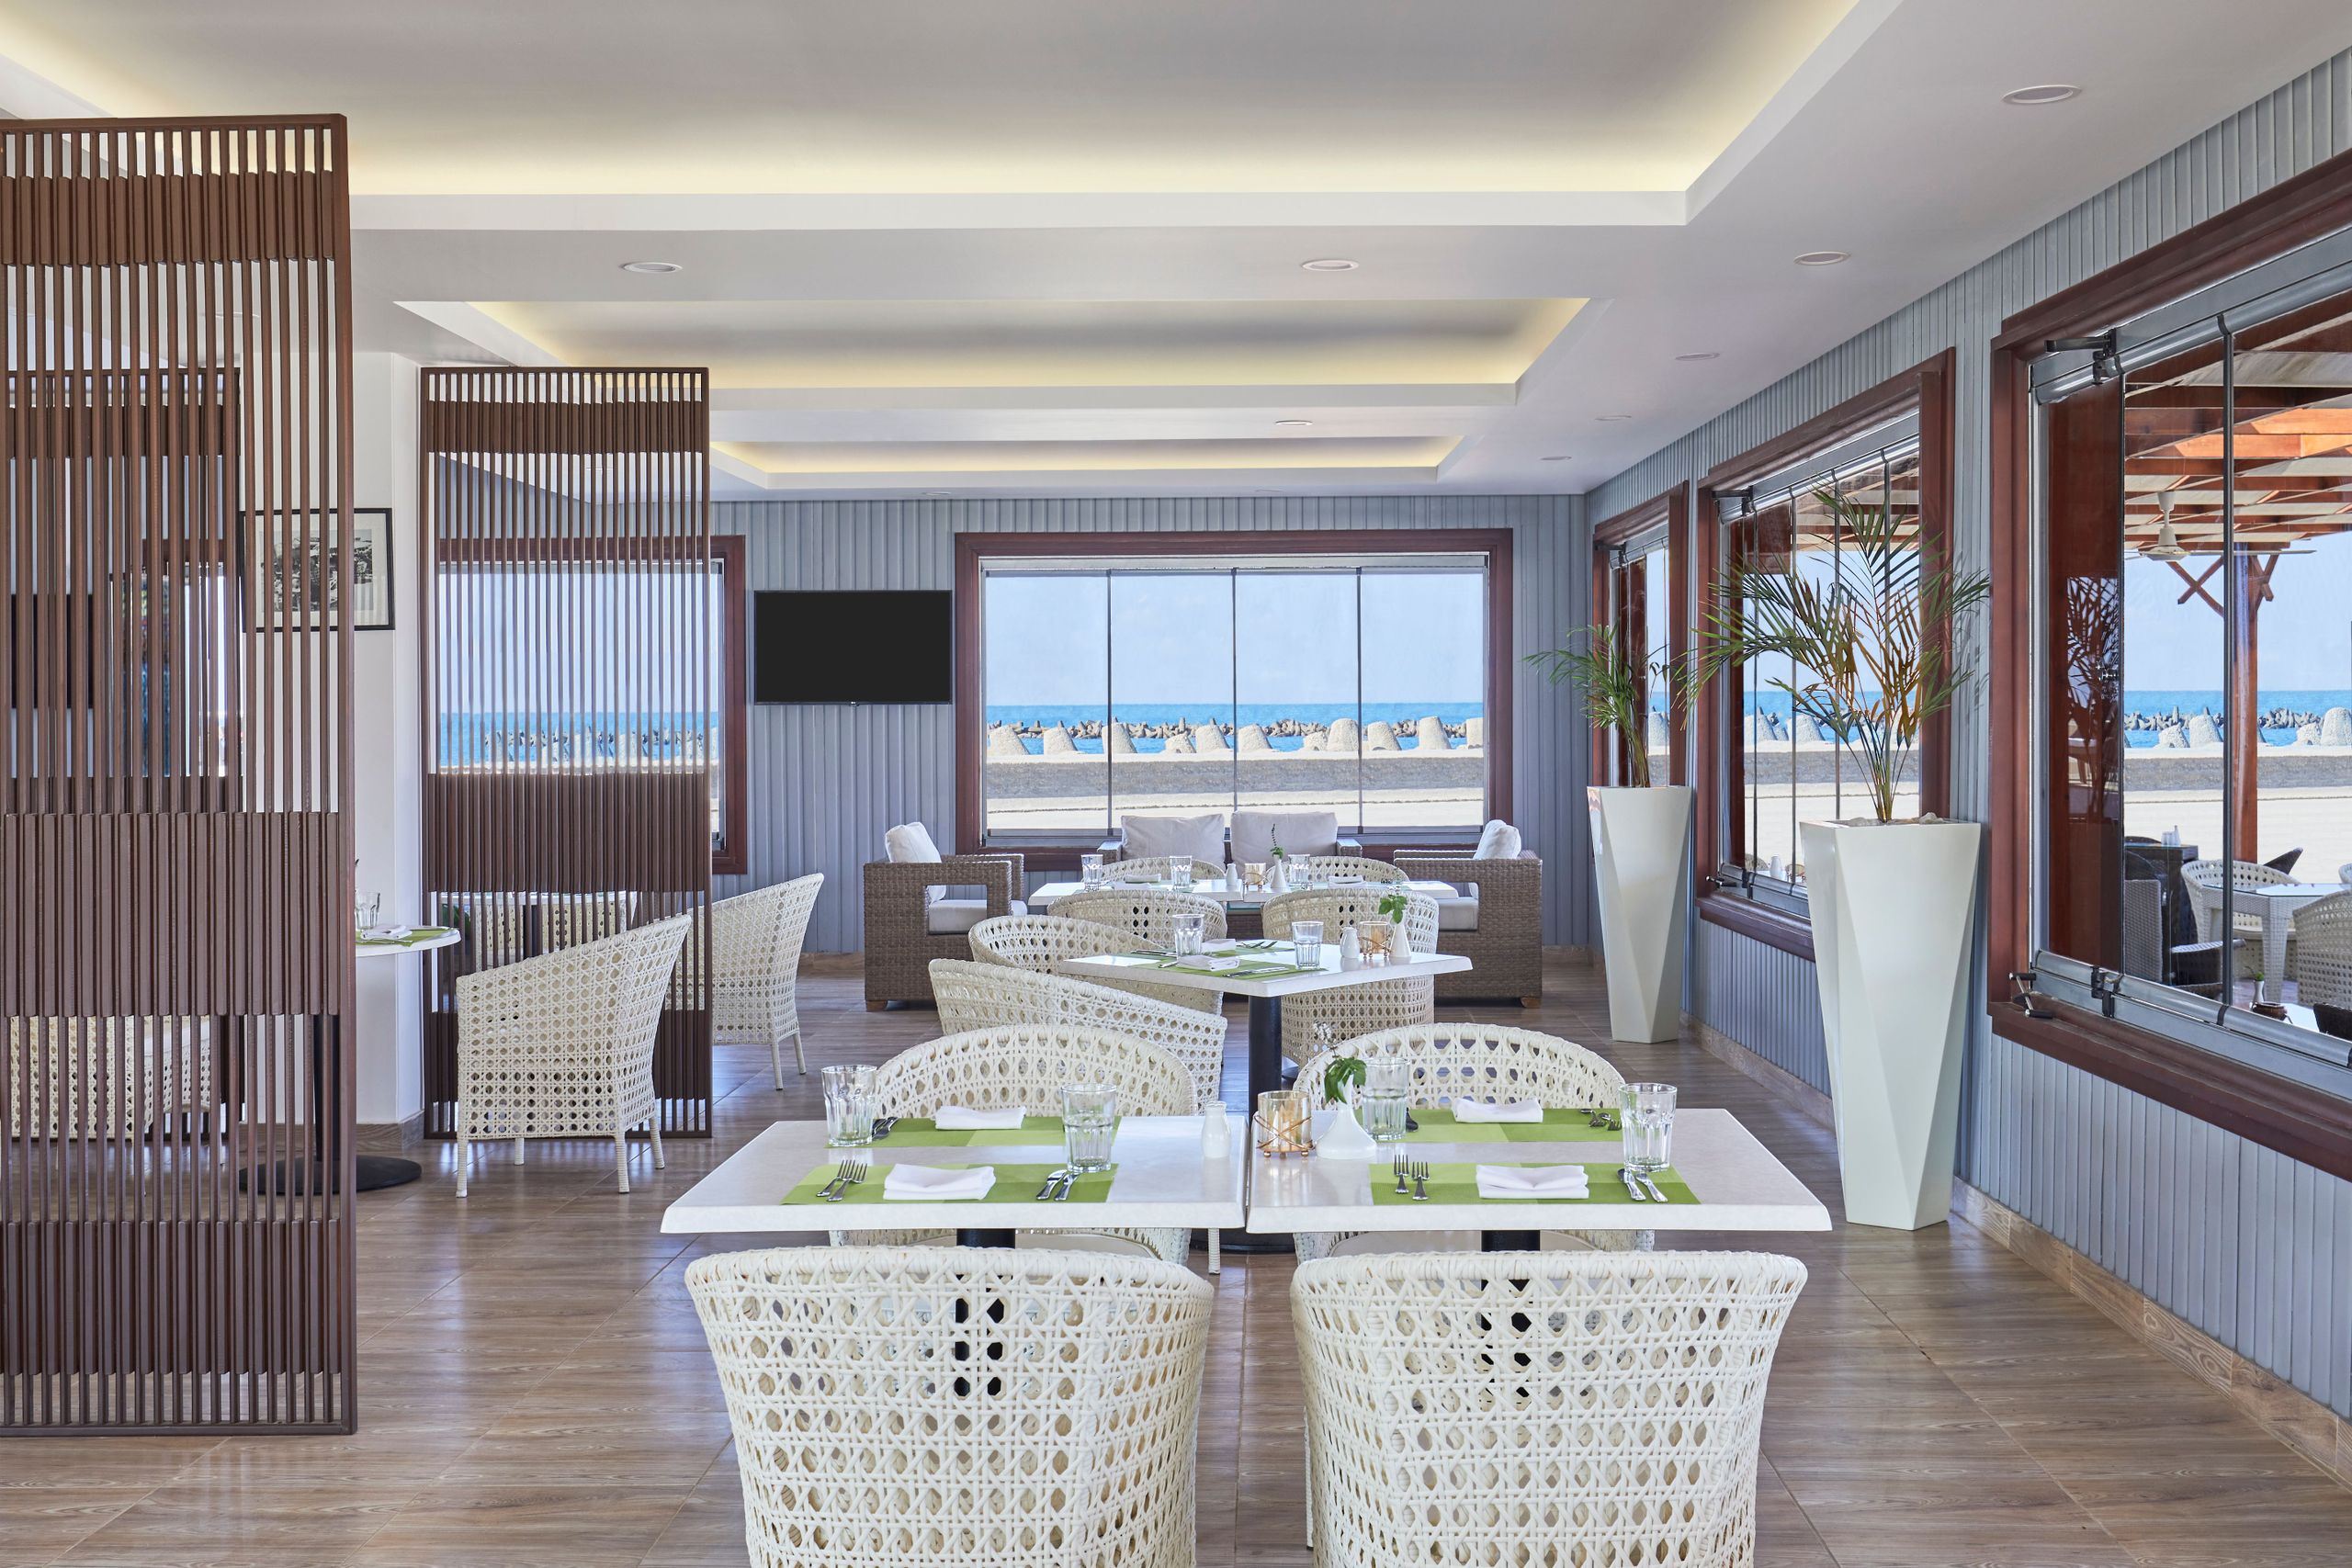 Steigenberger Hotel El Lessan - Ras El Bar - Egipto - Restaurante de playa